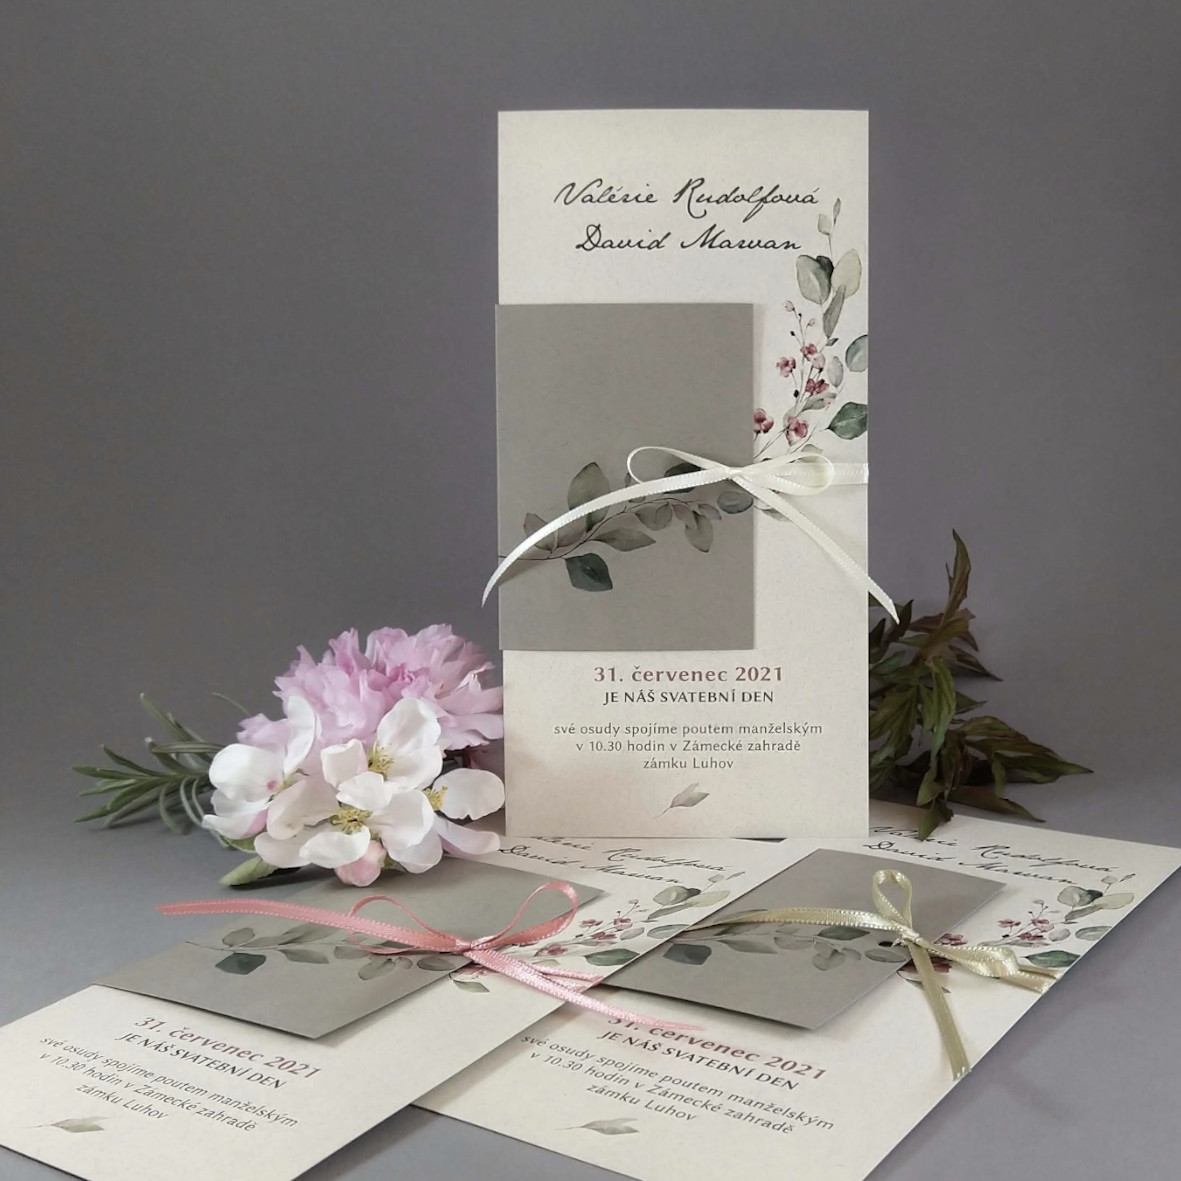 Svatební oznámení – DL karta s přebalem z papírů s příměsí bavlny s motivem větvičky a bordó květů